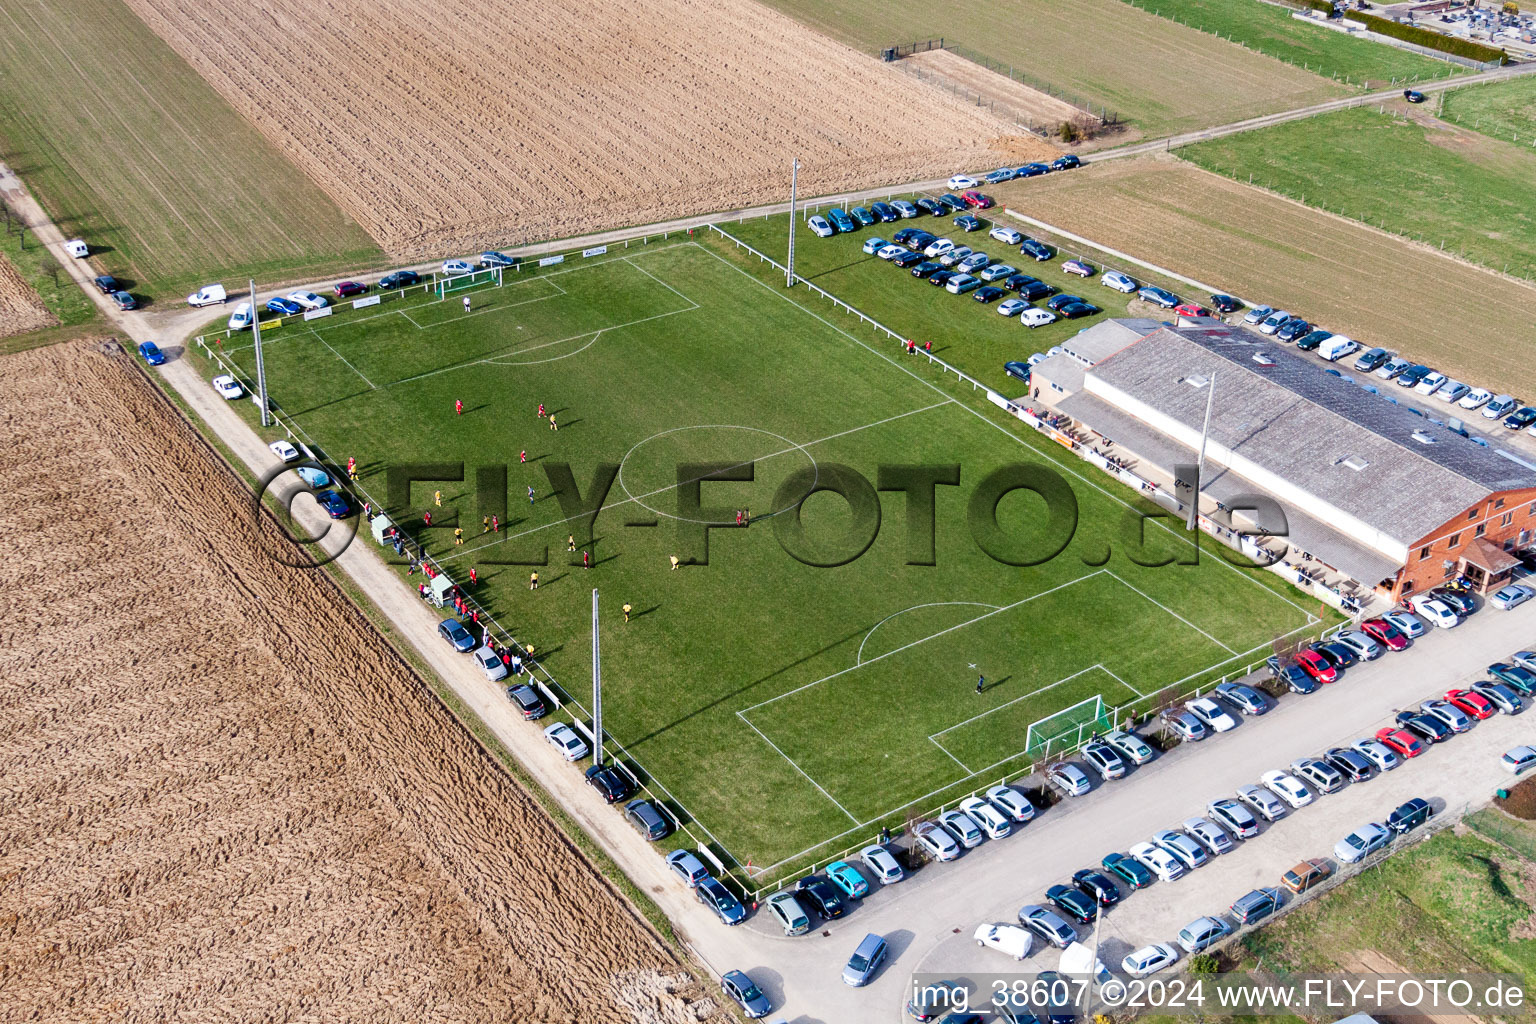 Luftbild von Sportplatz- Fussballplatz in Ringendorf in Grand Est im Bundesland Bas-Rhin, Frankreich